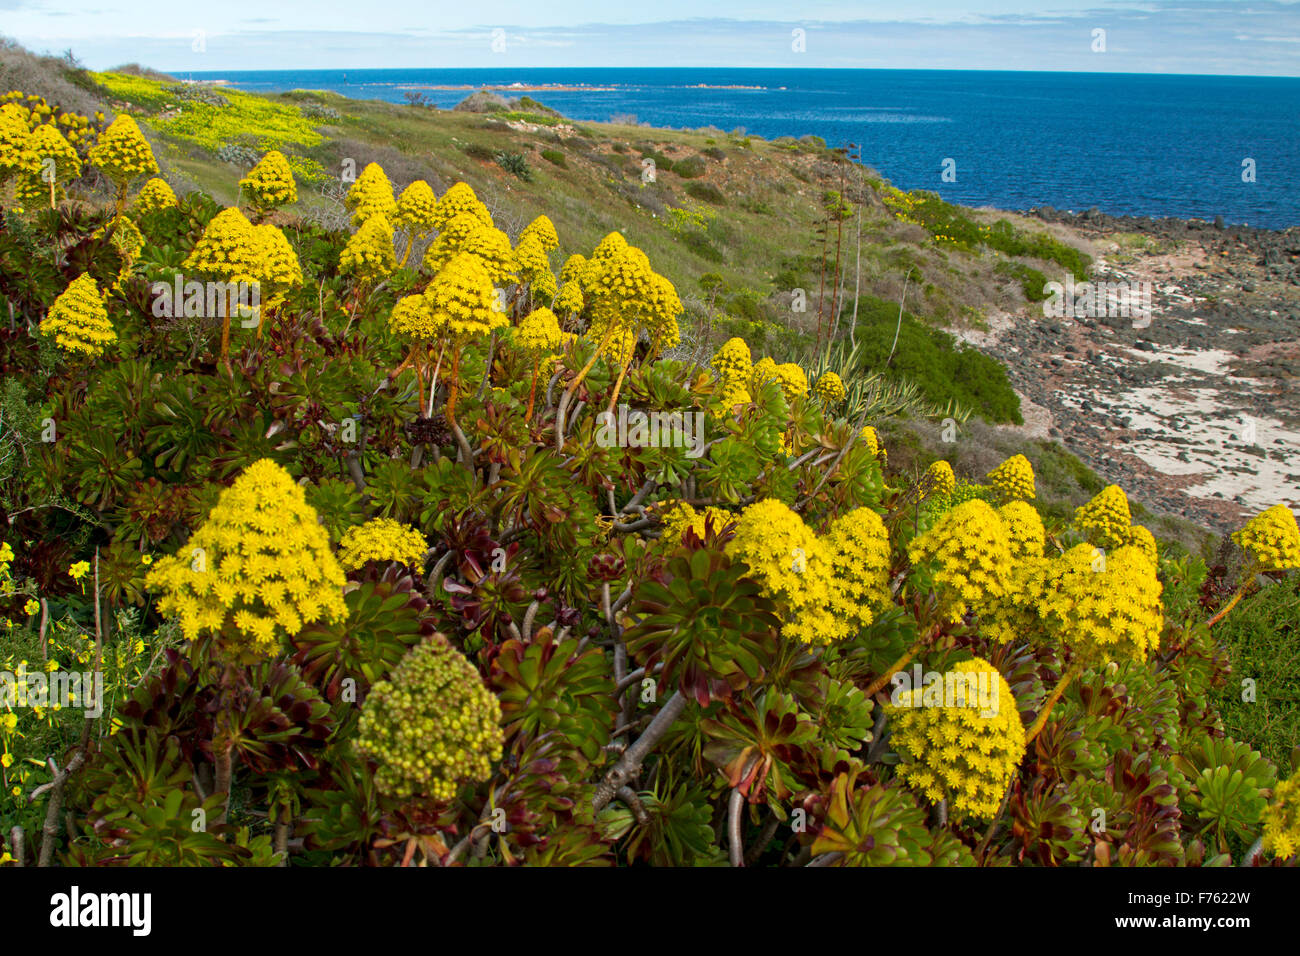 Succulentes Aeonium arboreum, houseleek une masse de fleurs jaunes, une mauvaise herbe envahissante qui poussent sur les dunes côtières dans sth Aust Banque D'Images